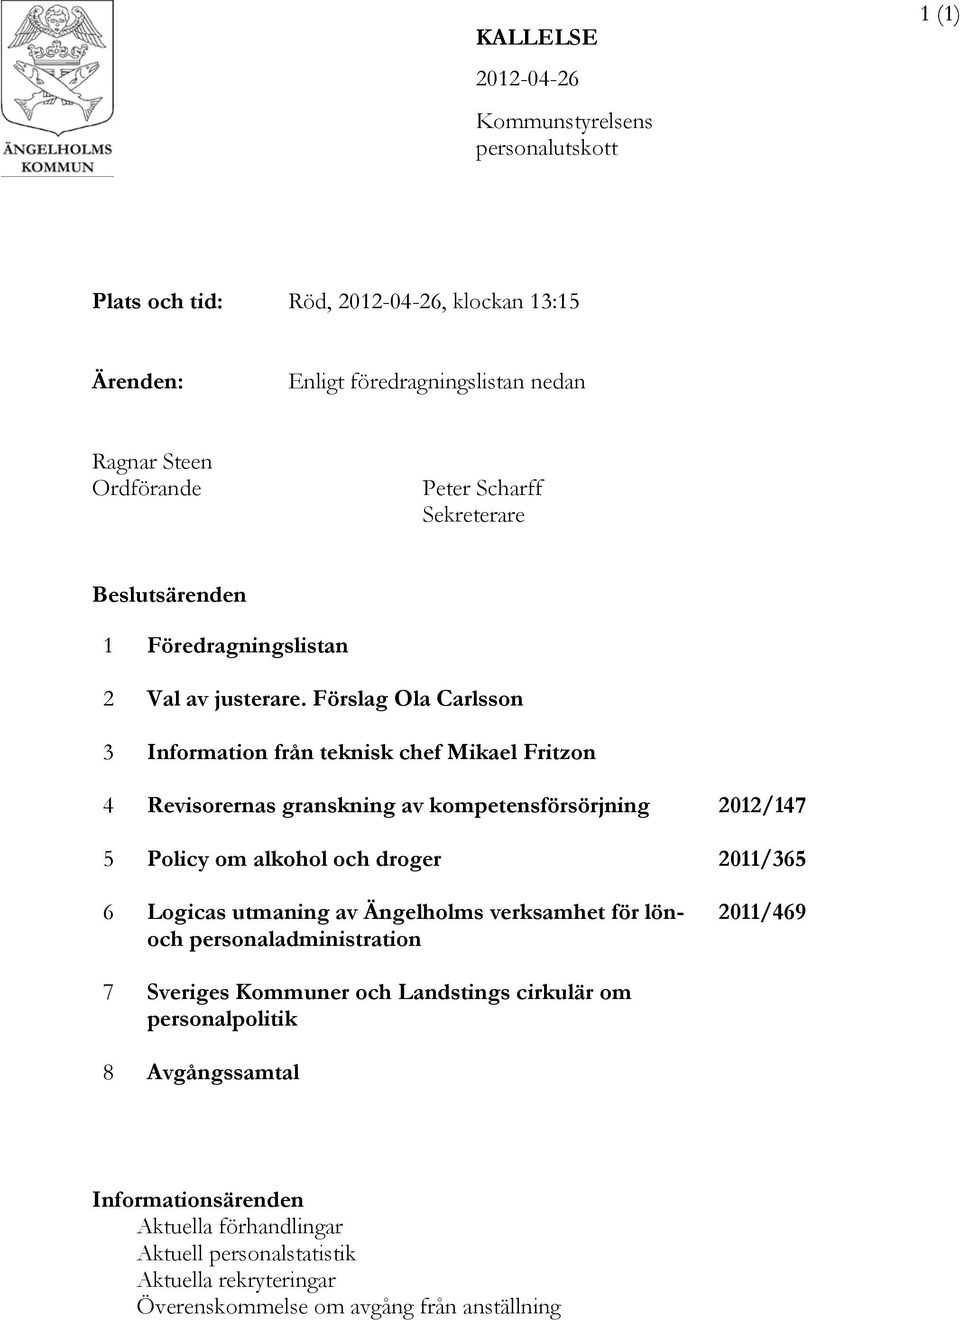 Förslag Ola Carlsson 3 Information från teknisk chef Mikael Fritzon 4 Revisorernas granskning av kompetensförsörjning 2012/147 5 Policy om alkohol och droger 2011/365 6 Logicas